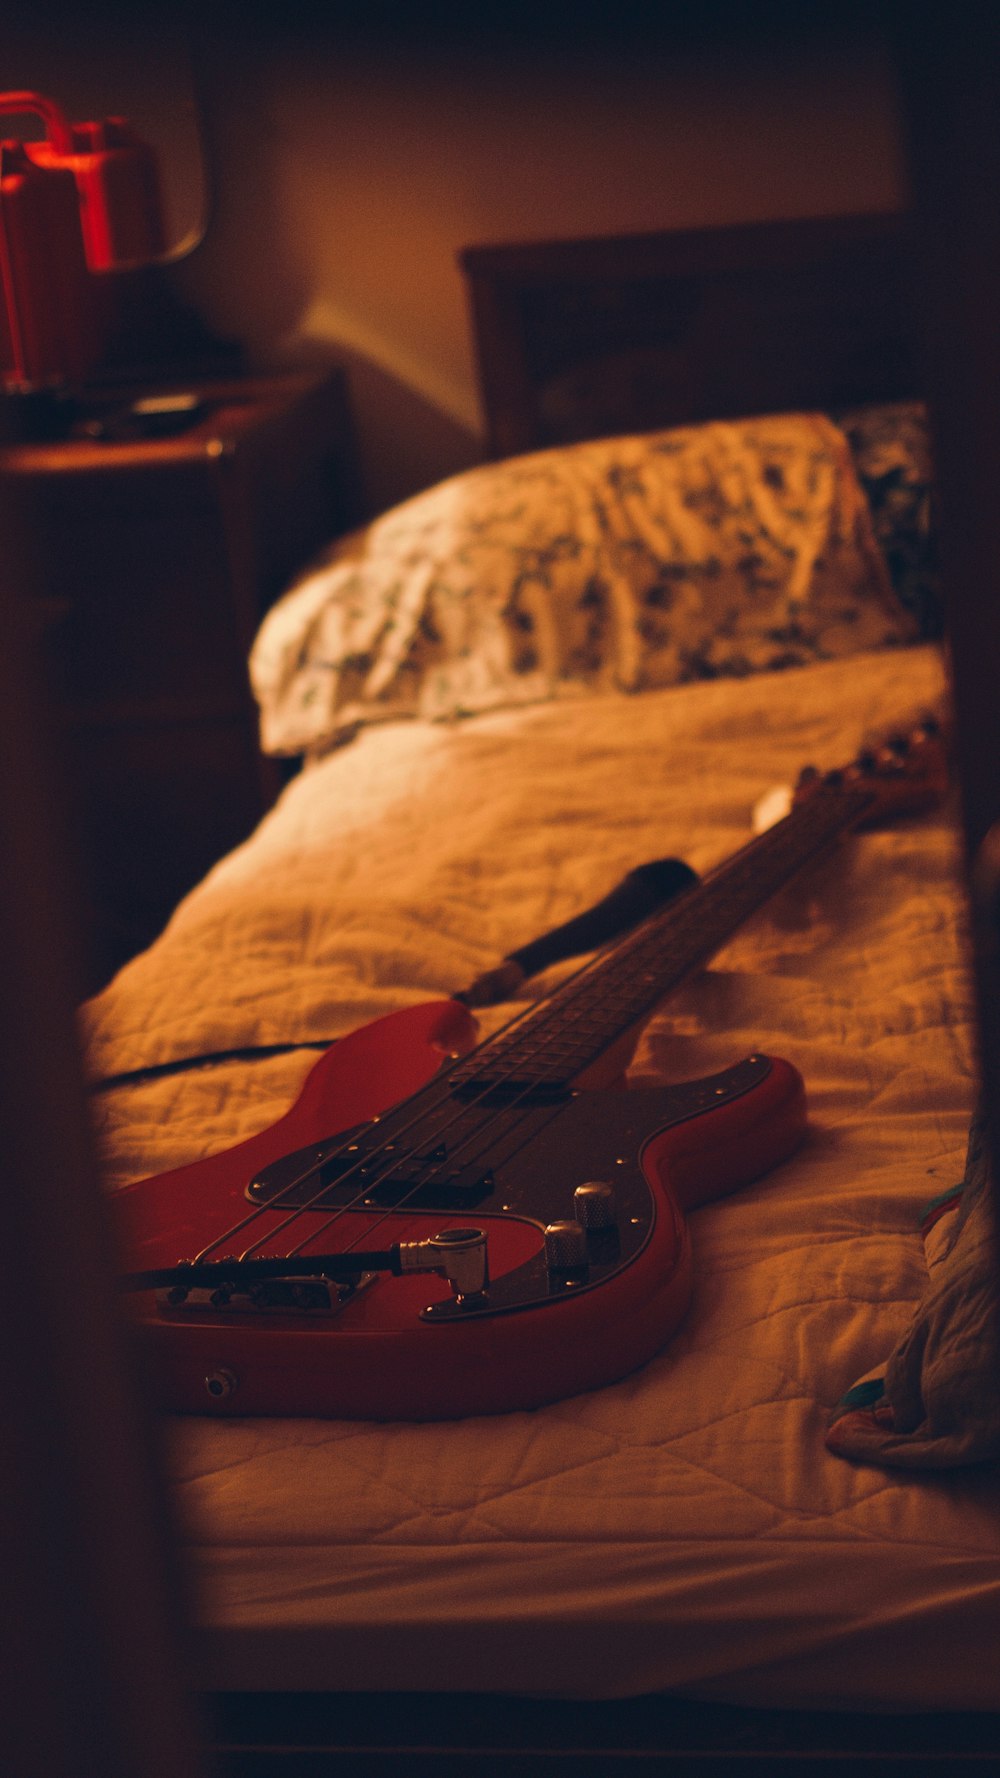 Chitarra elettrica Stratocaster marrone e bianca su divano marrone